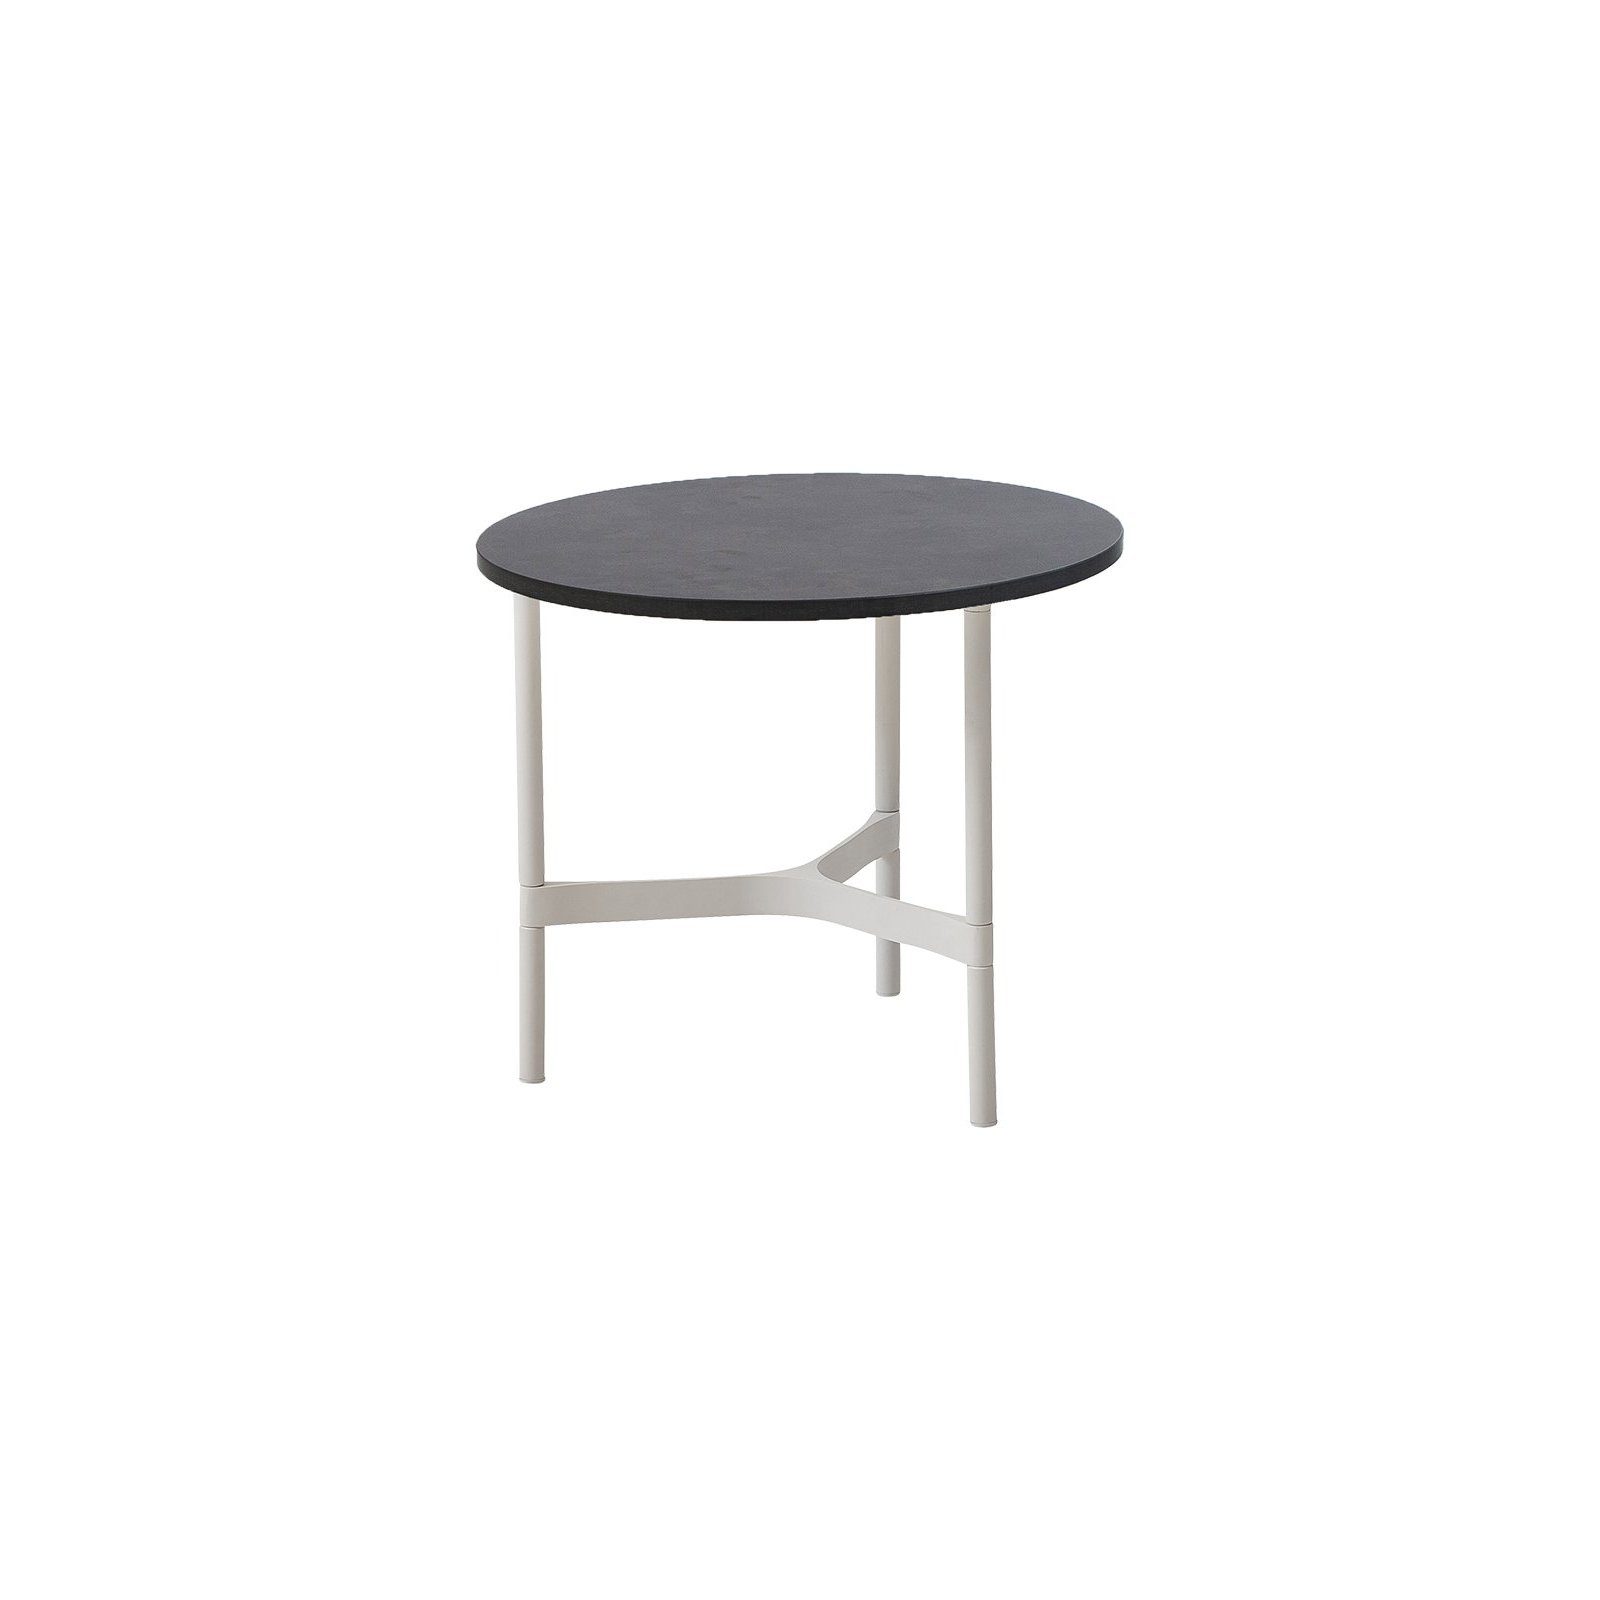 Cane-line "Twist" Loungetisch, klein, Gestell Aluminium weiß, Tischplatte HPL dark grey structure